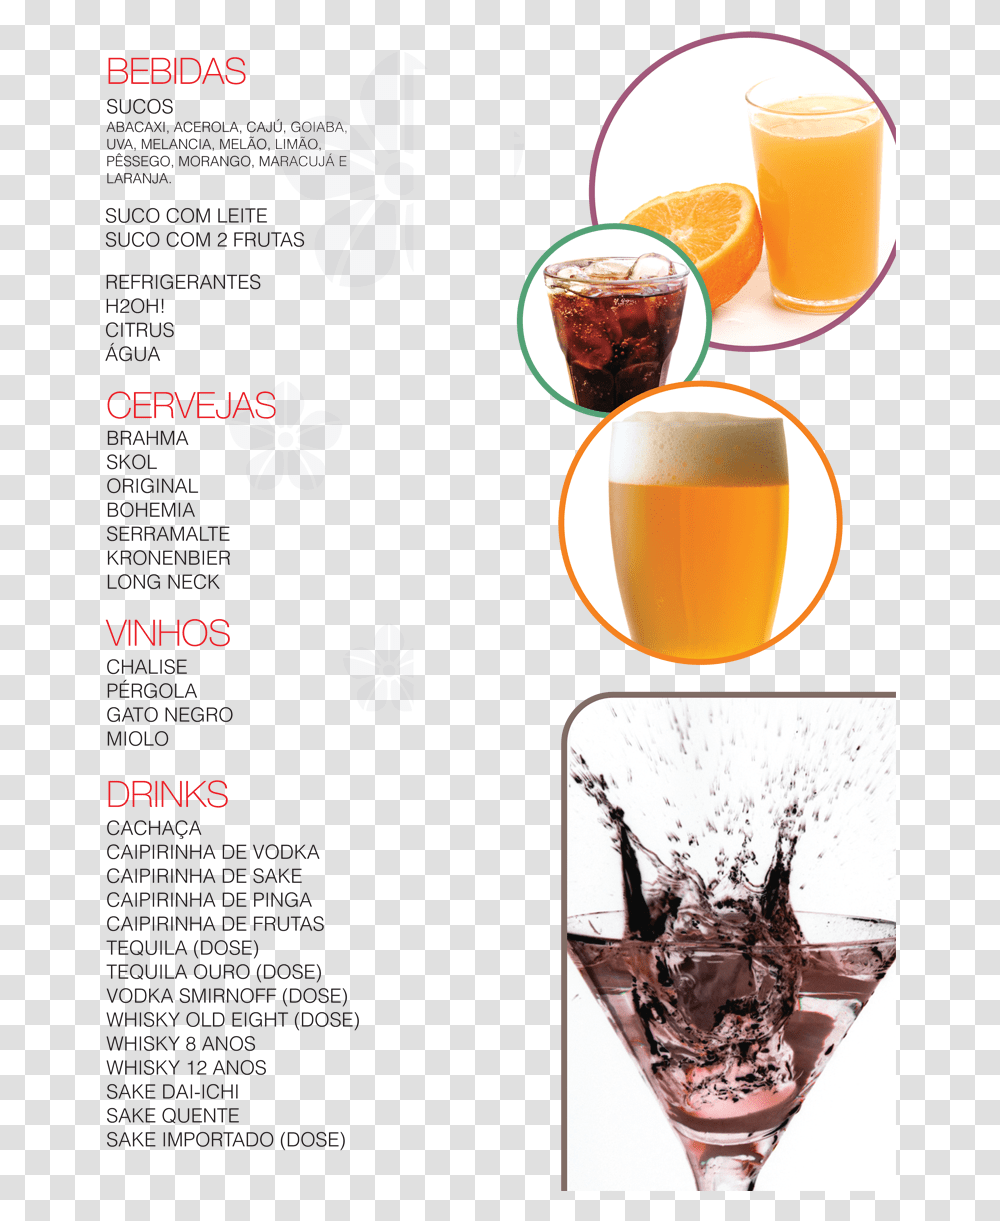 Clip Art Cardapio De Bebidas Cardpio De Bebidas Sucos, Orange, Plant, Food, Glass Transparent Png